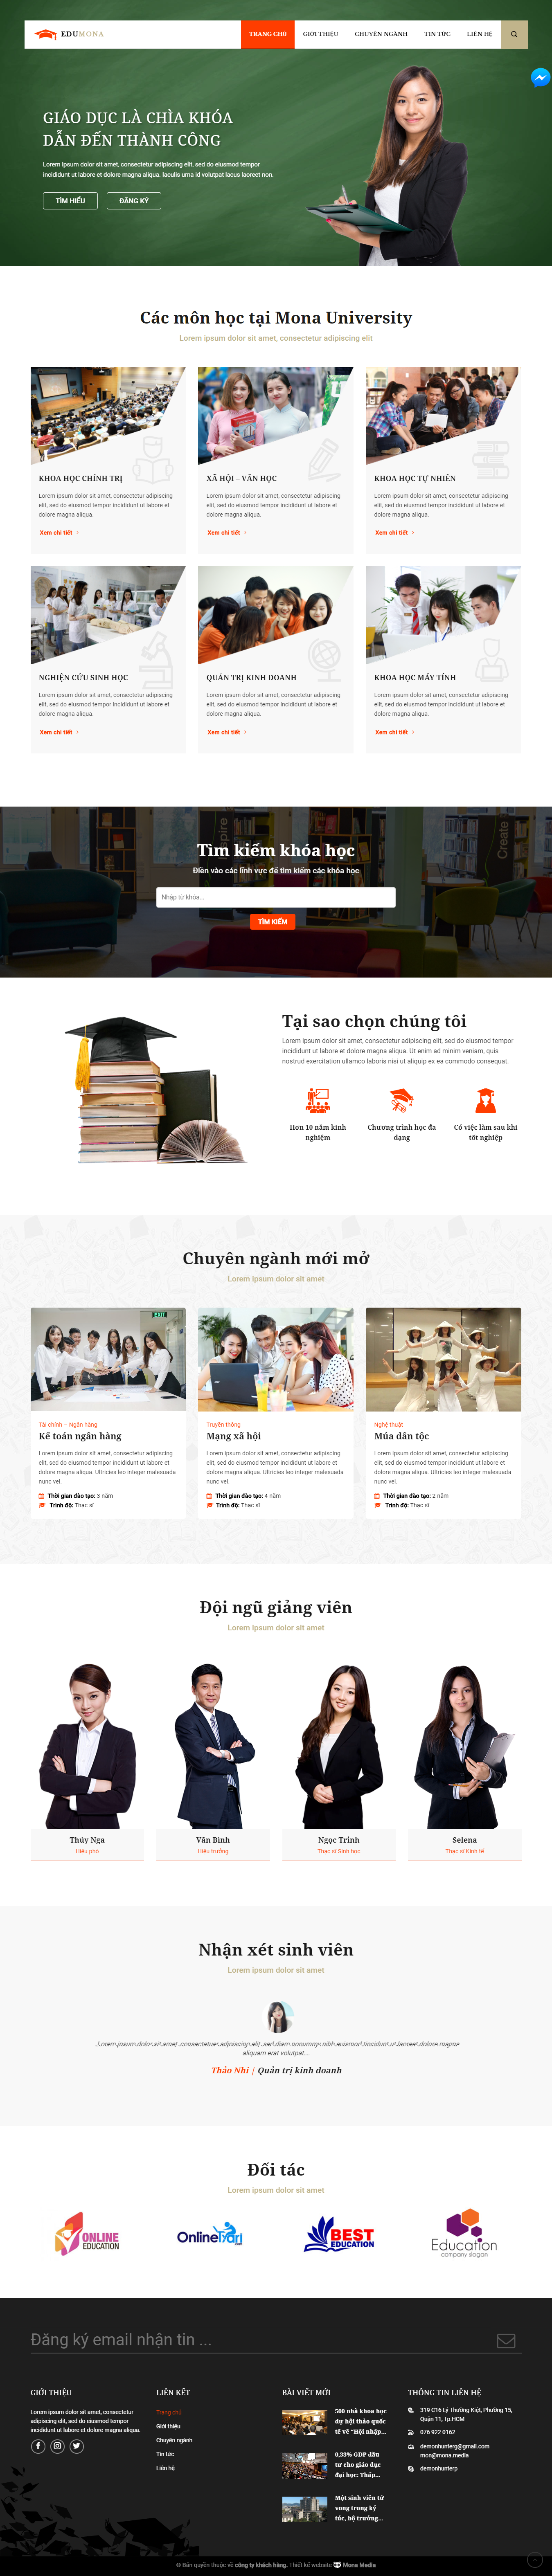 Mẫu website giới thiệu trường đại học cao đẳng trường nghề đơn giản